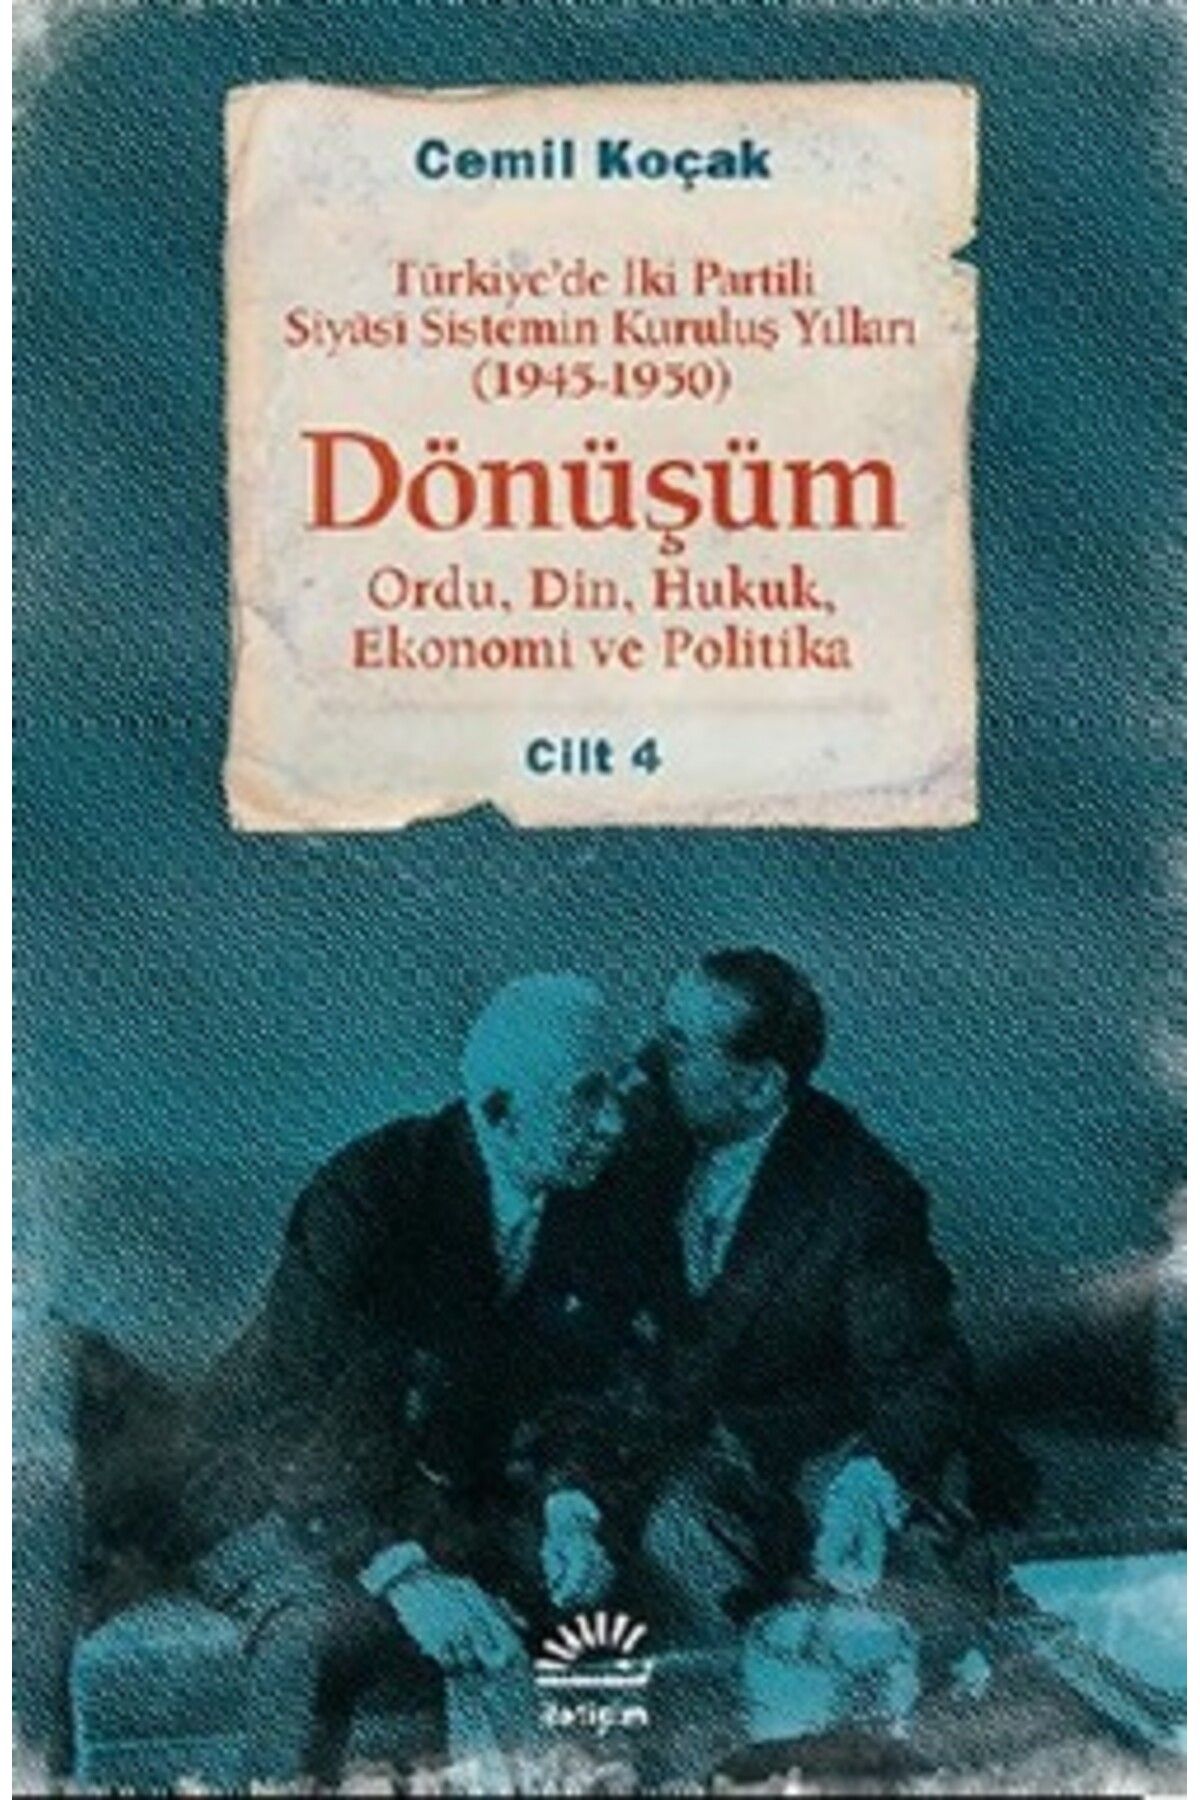 İletişim Yayınları Dönüşüm: Türkiye'de İki Partili Siyasi Sistemin Kuruluş Yılları (1945-1950) Cilt 4